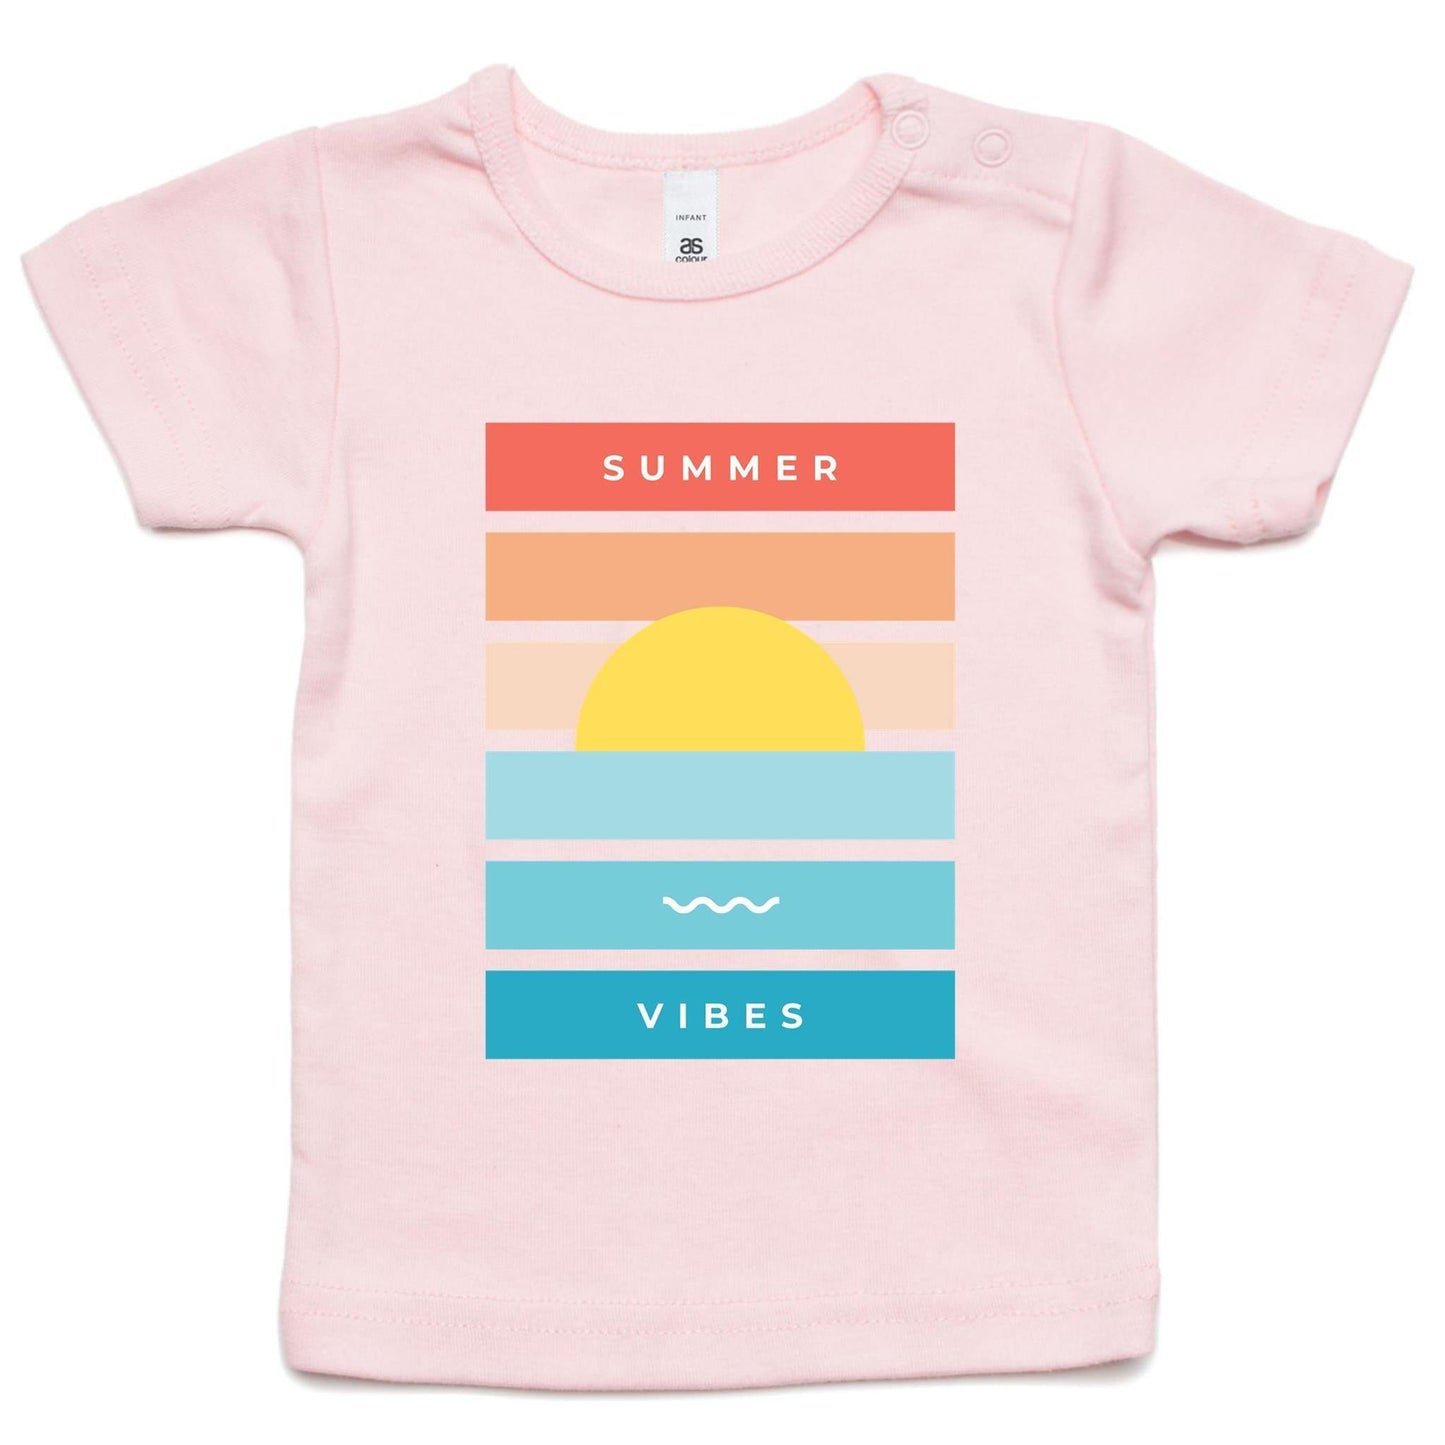 Summer Vibes - Baby T-shirt Pink Baby T-shirt kids Summer